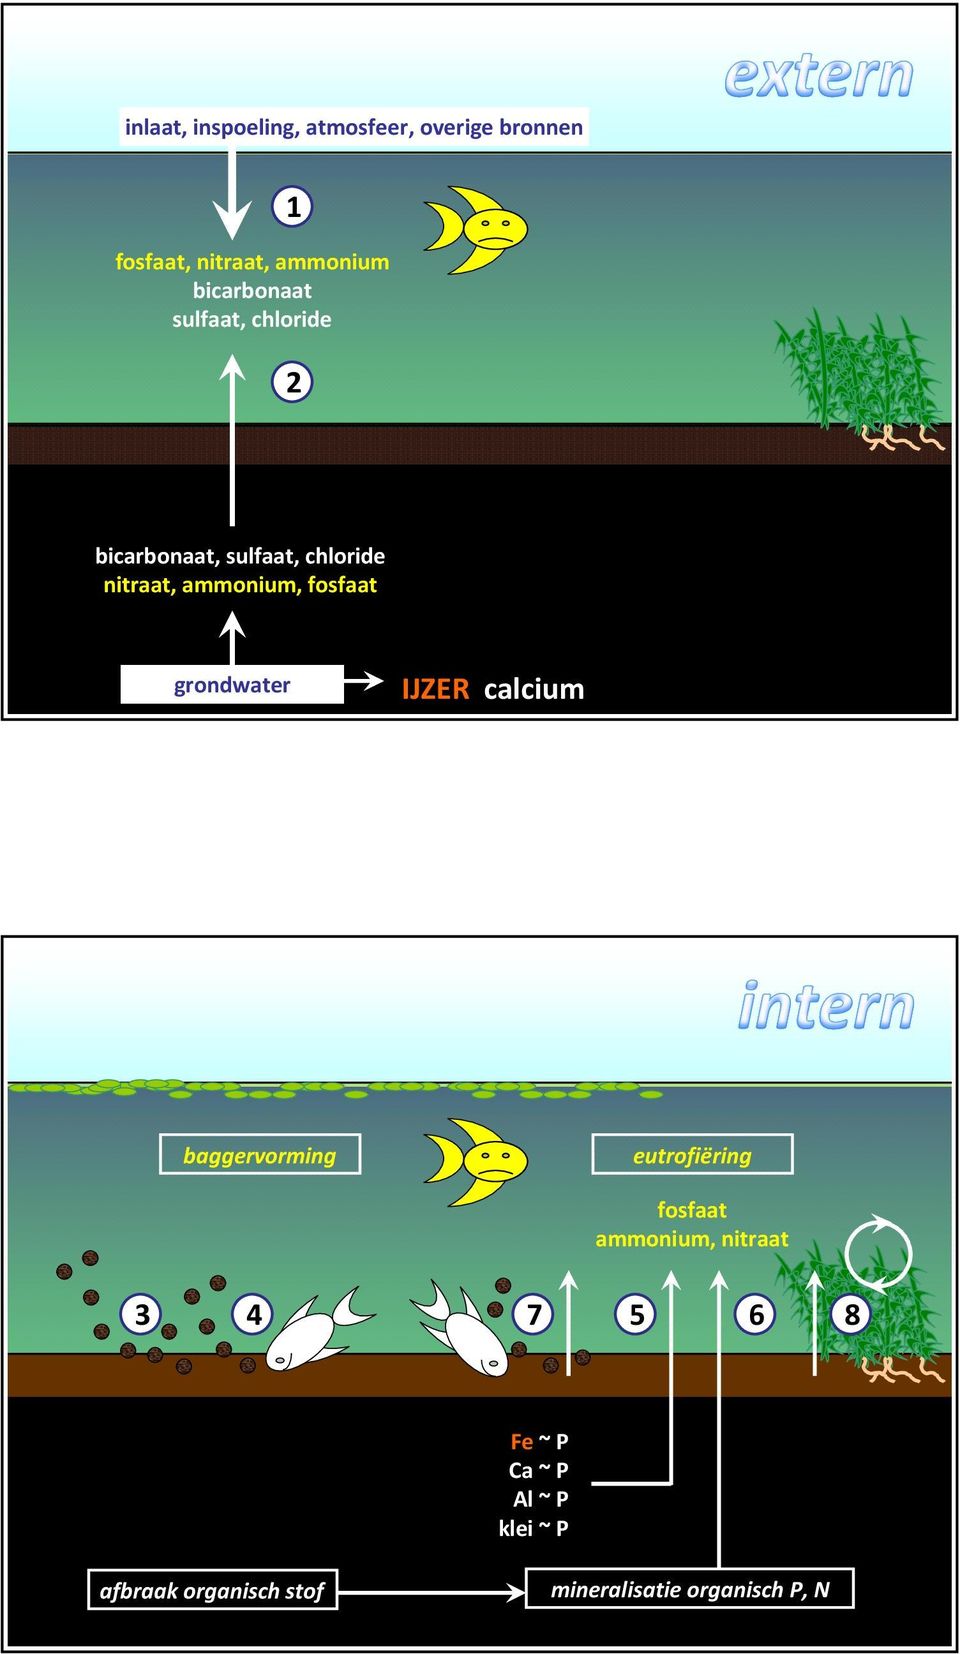 fosfaat grondwater IJZER calcium baggervorming eutrofiëring fosfaat ammonium,